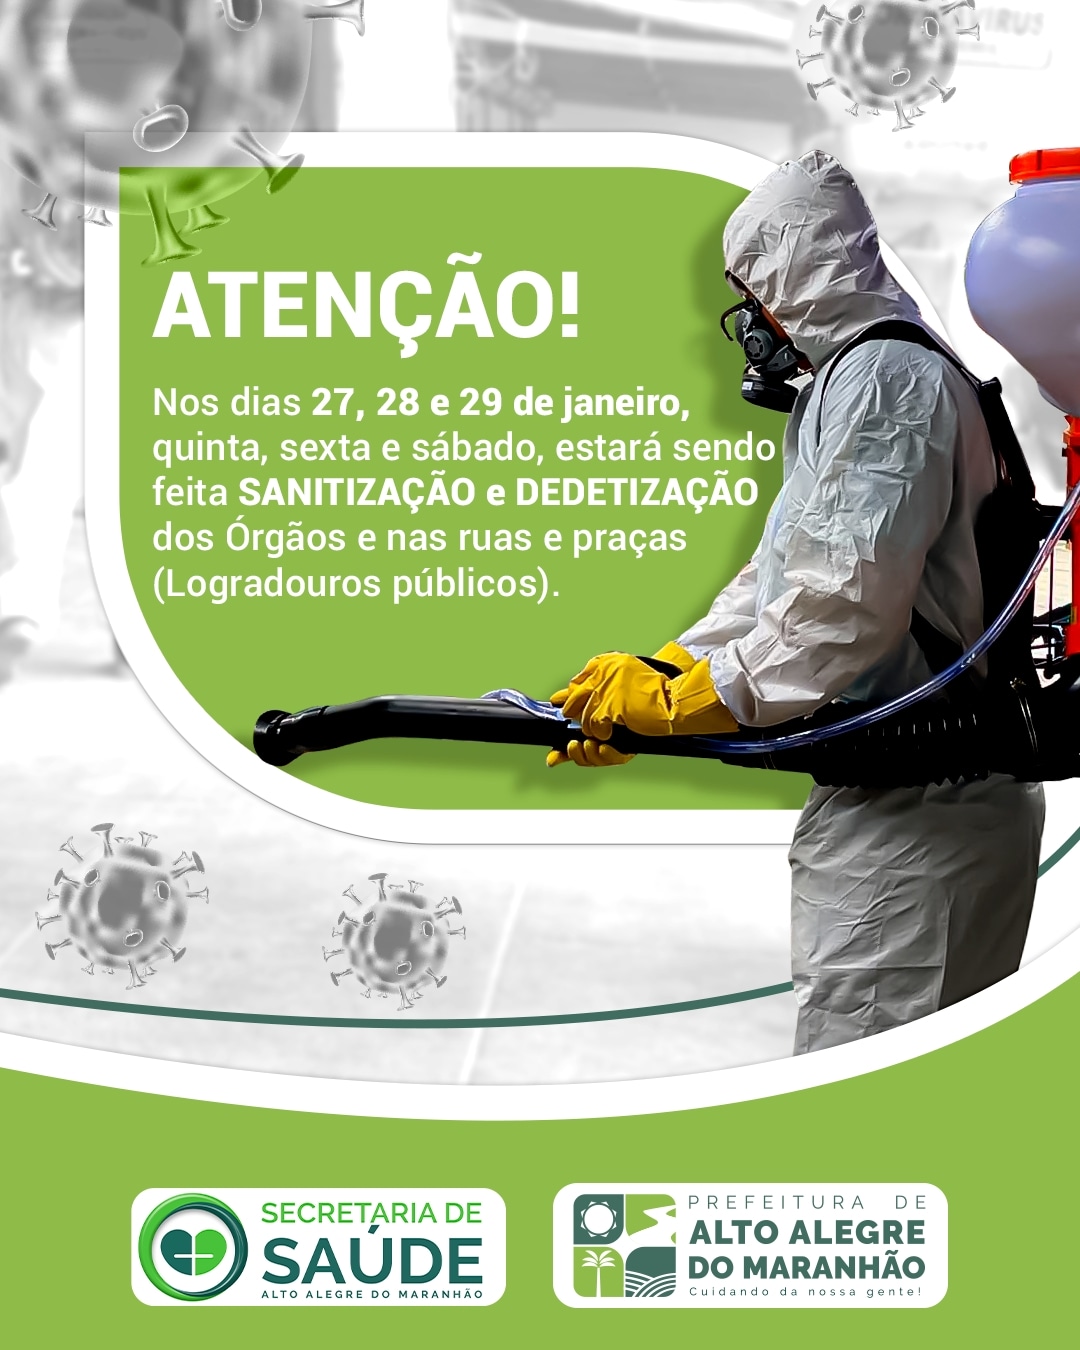 ATENÇÃO!! A Prefeitura de Alto Alegre do Maranhão, segue com os protocolos e procedimentos de higiene e sanitização na cidade.